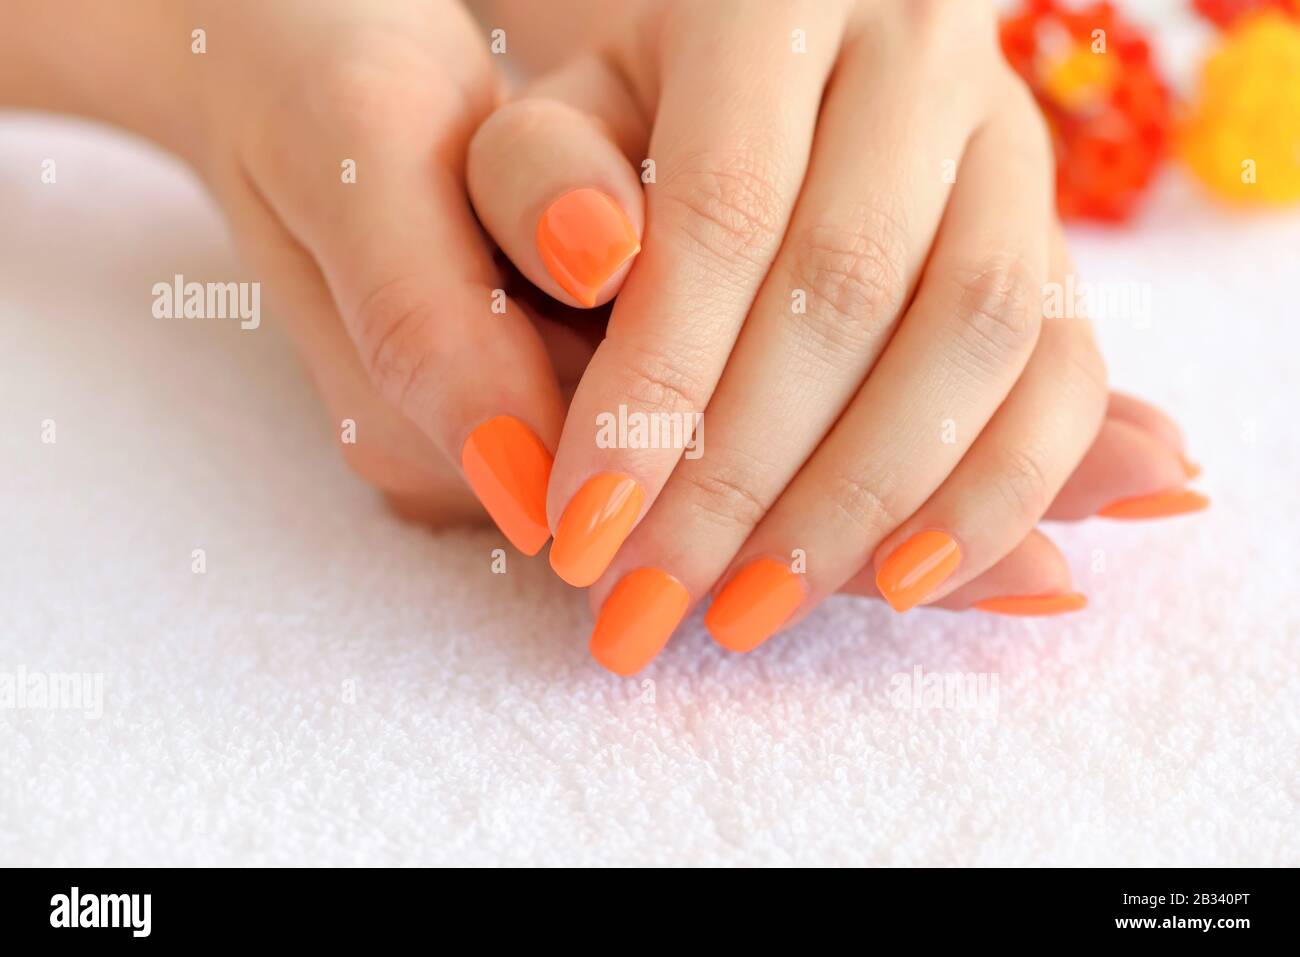 Mareo Perjudicial Asistente Manos de una mujer con manicura naranja en uñas sobre el fondo de una toalla  blanca Fotografía de stock - Alamy